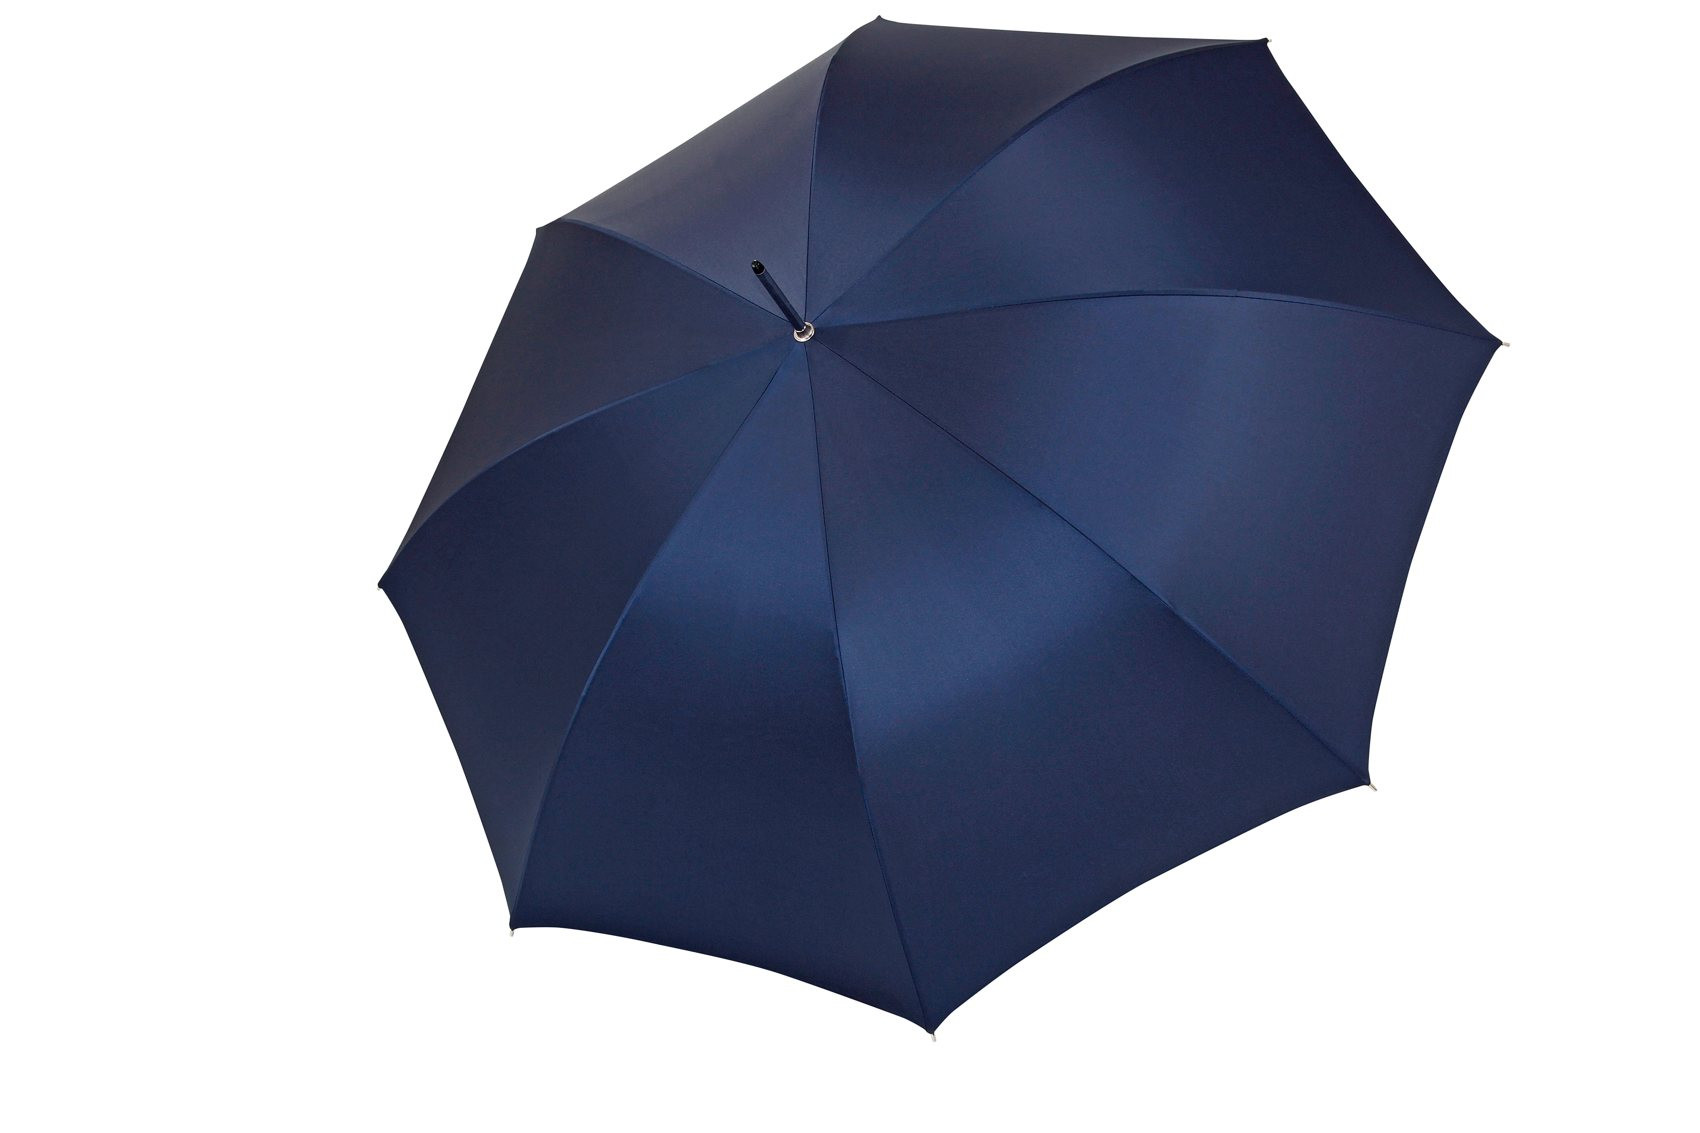 Einzigartiges mit Stil: doppler aus Manufaktur: der UNIKATOO Regenschirm bei Kastanie Oxford